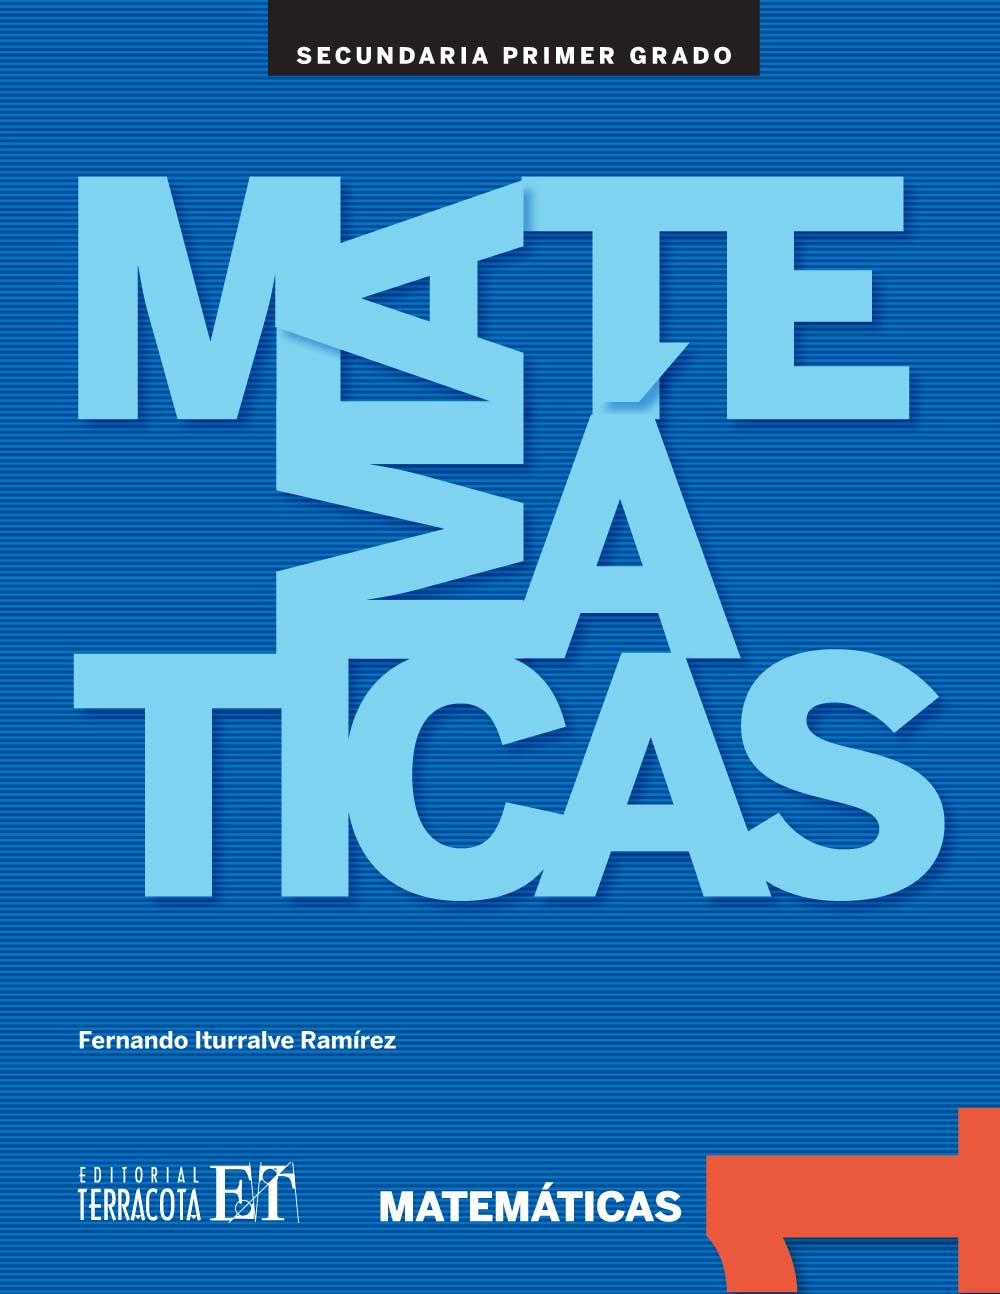 Matemáticas 1, Editorial: Terracota, Nivel: Secundaria, Grado: 1